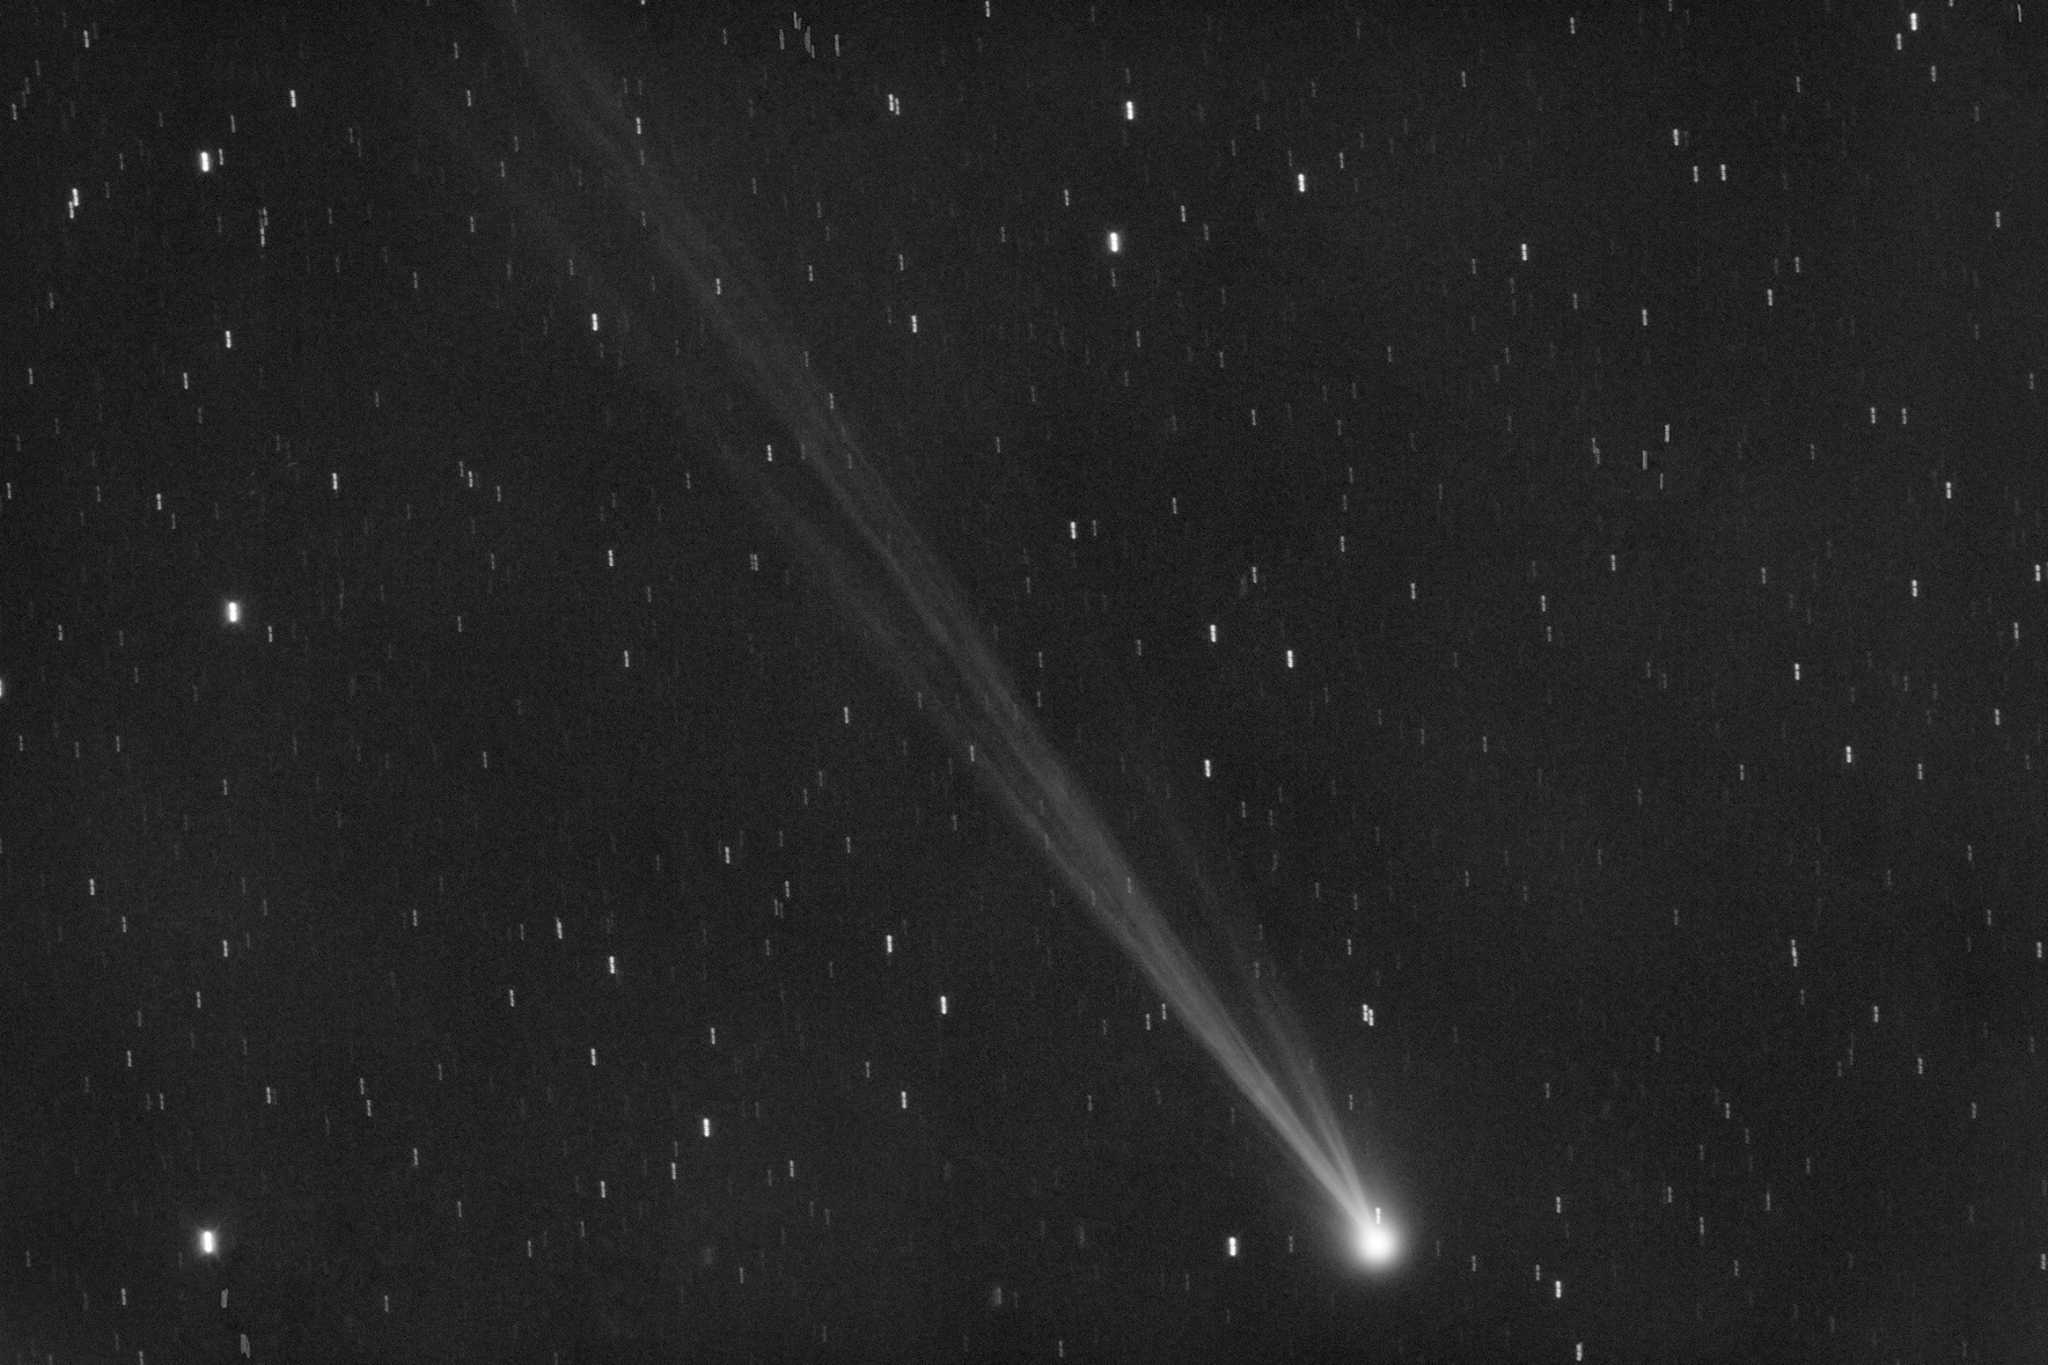 新发现的绿色彗星将在430年轨道上经过地球。在湾区能看到吗？